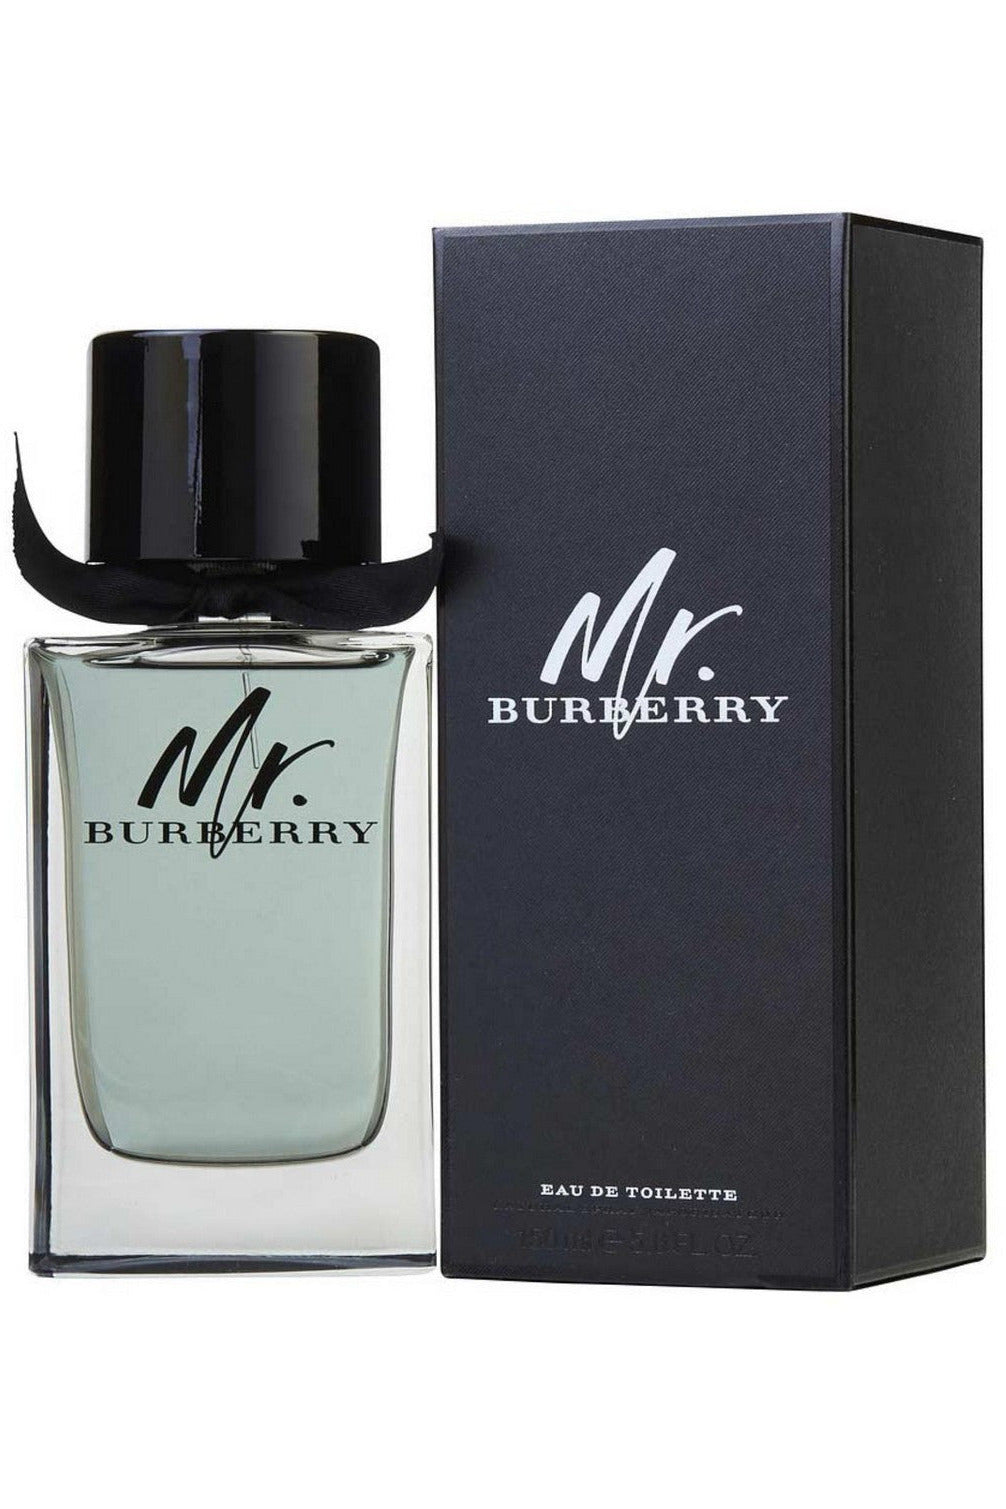 Buy Burberry Mr Burberry Men EDT - 50ml in Pakistan